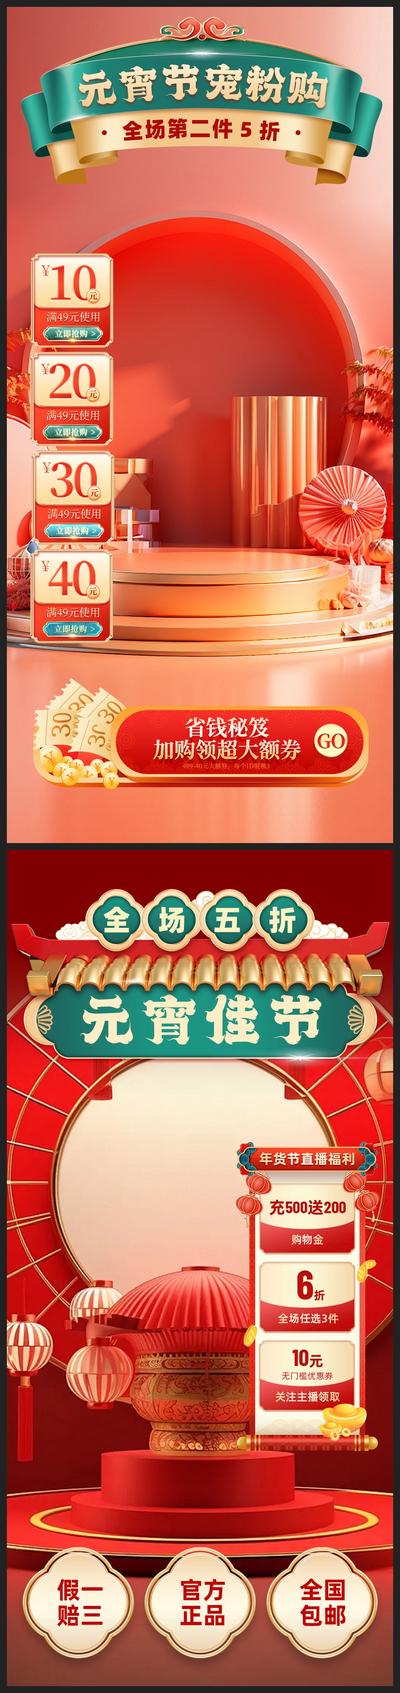 南门网 海报 中国传统节日 元宵节 直播间 背景 贴片 抖音 视频 过年 喜庆